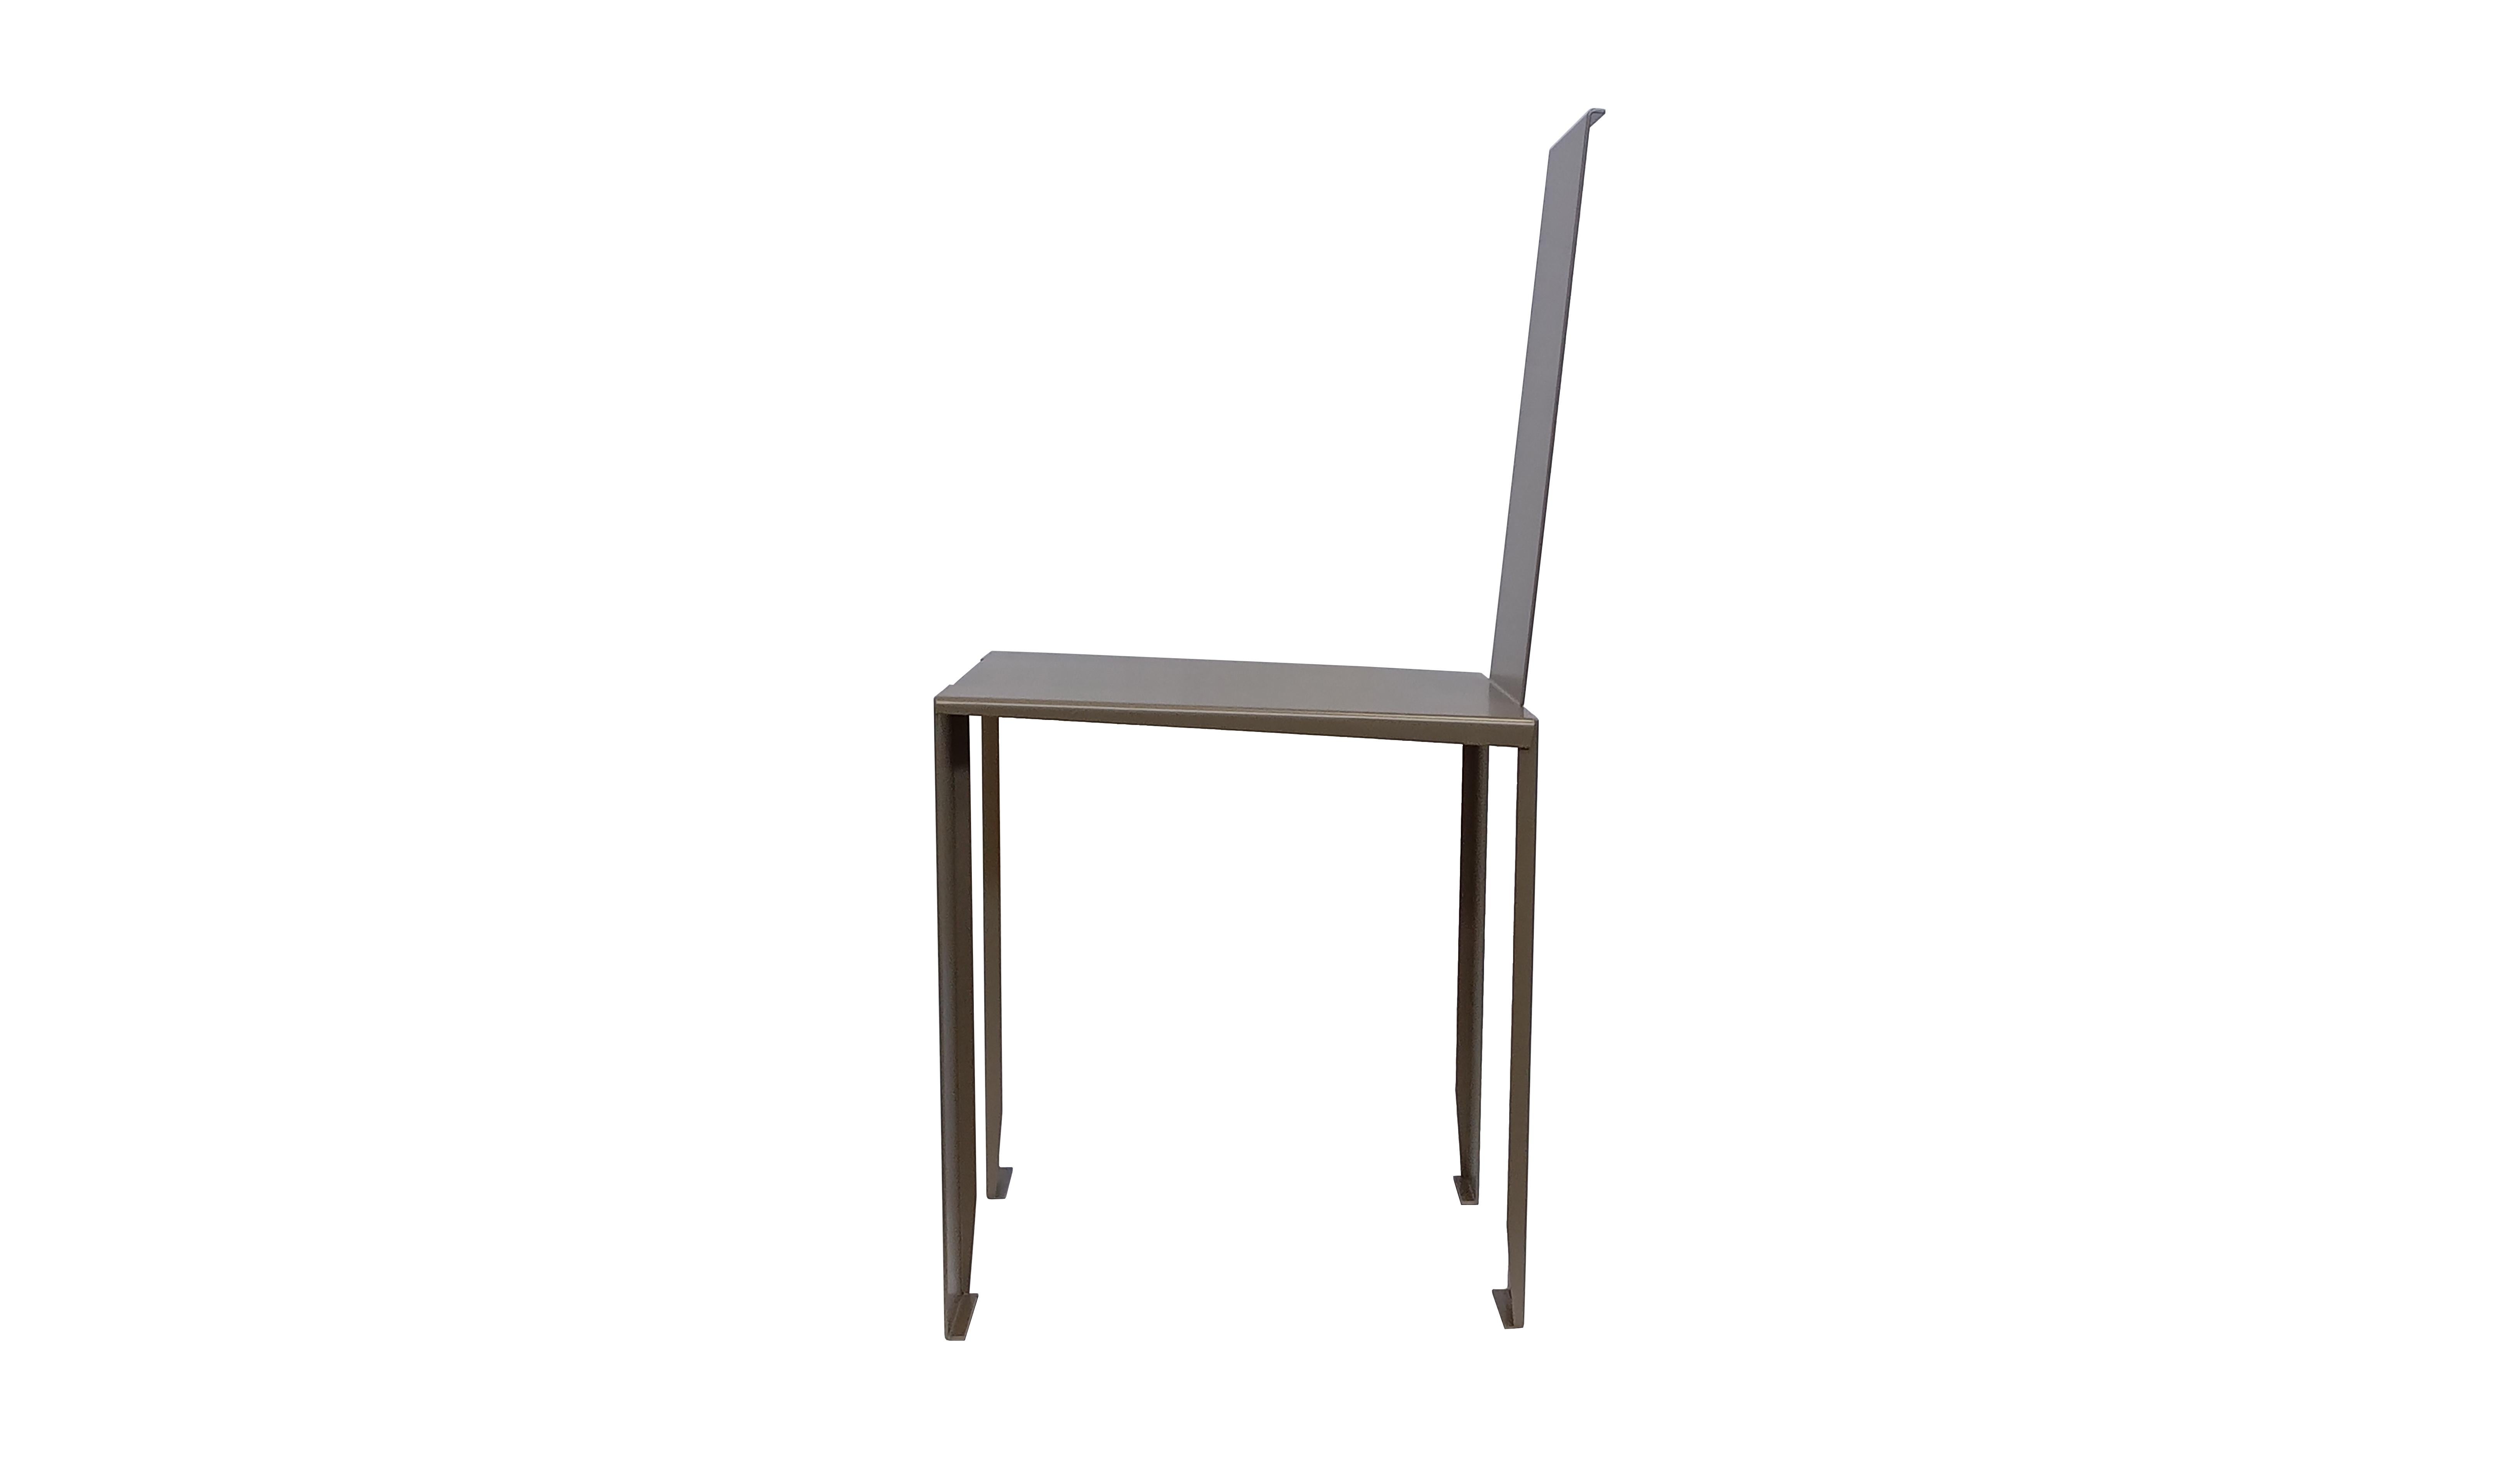 Une chaise substantielle, une chaise à l'apparence mince et temporaire, qui se révèle au contraire volontaire et durable dans le temps. Fabriqué de la même manière qu'un Origami en pliant simplement des feuilles d'acier. Il incarne le concept et